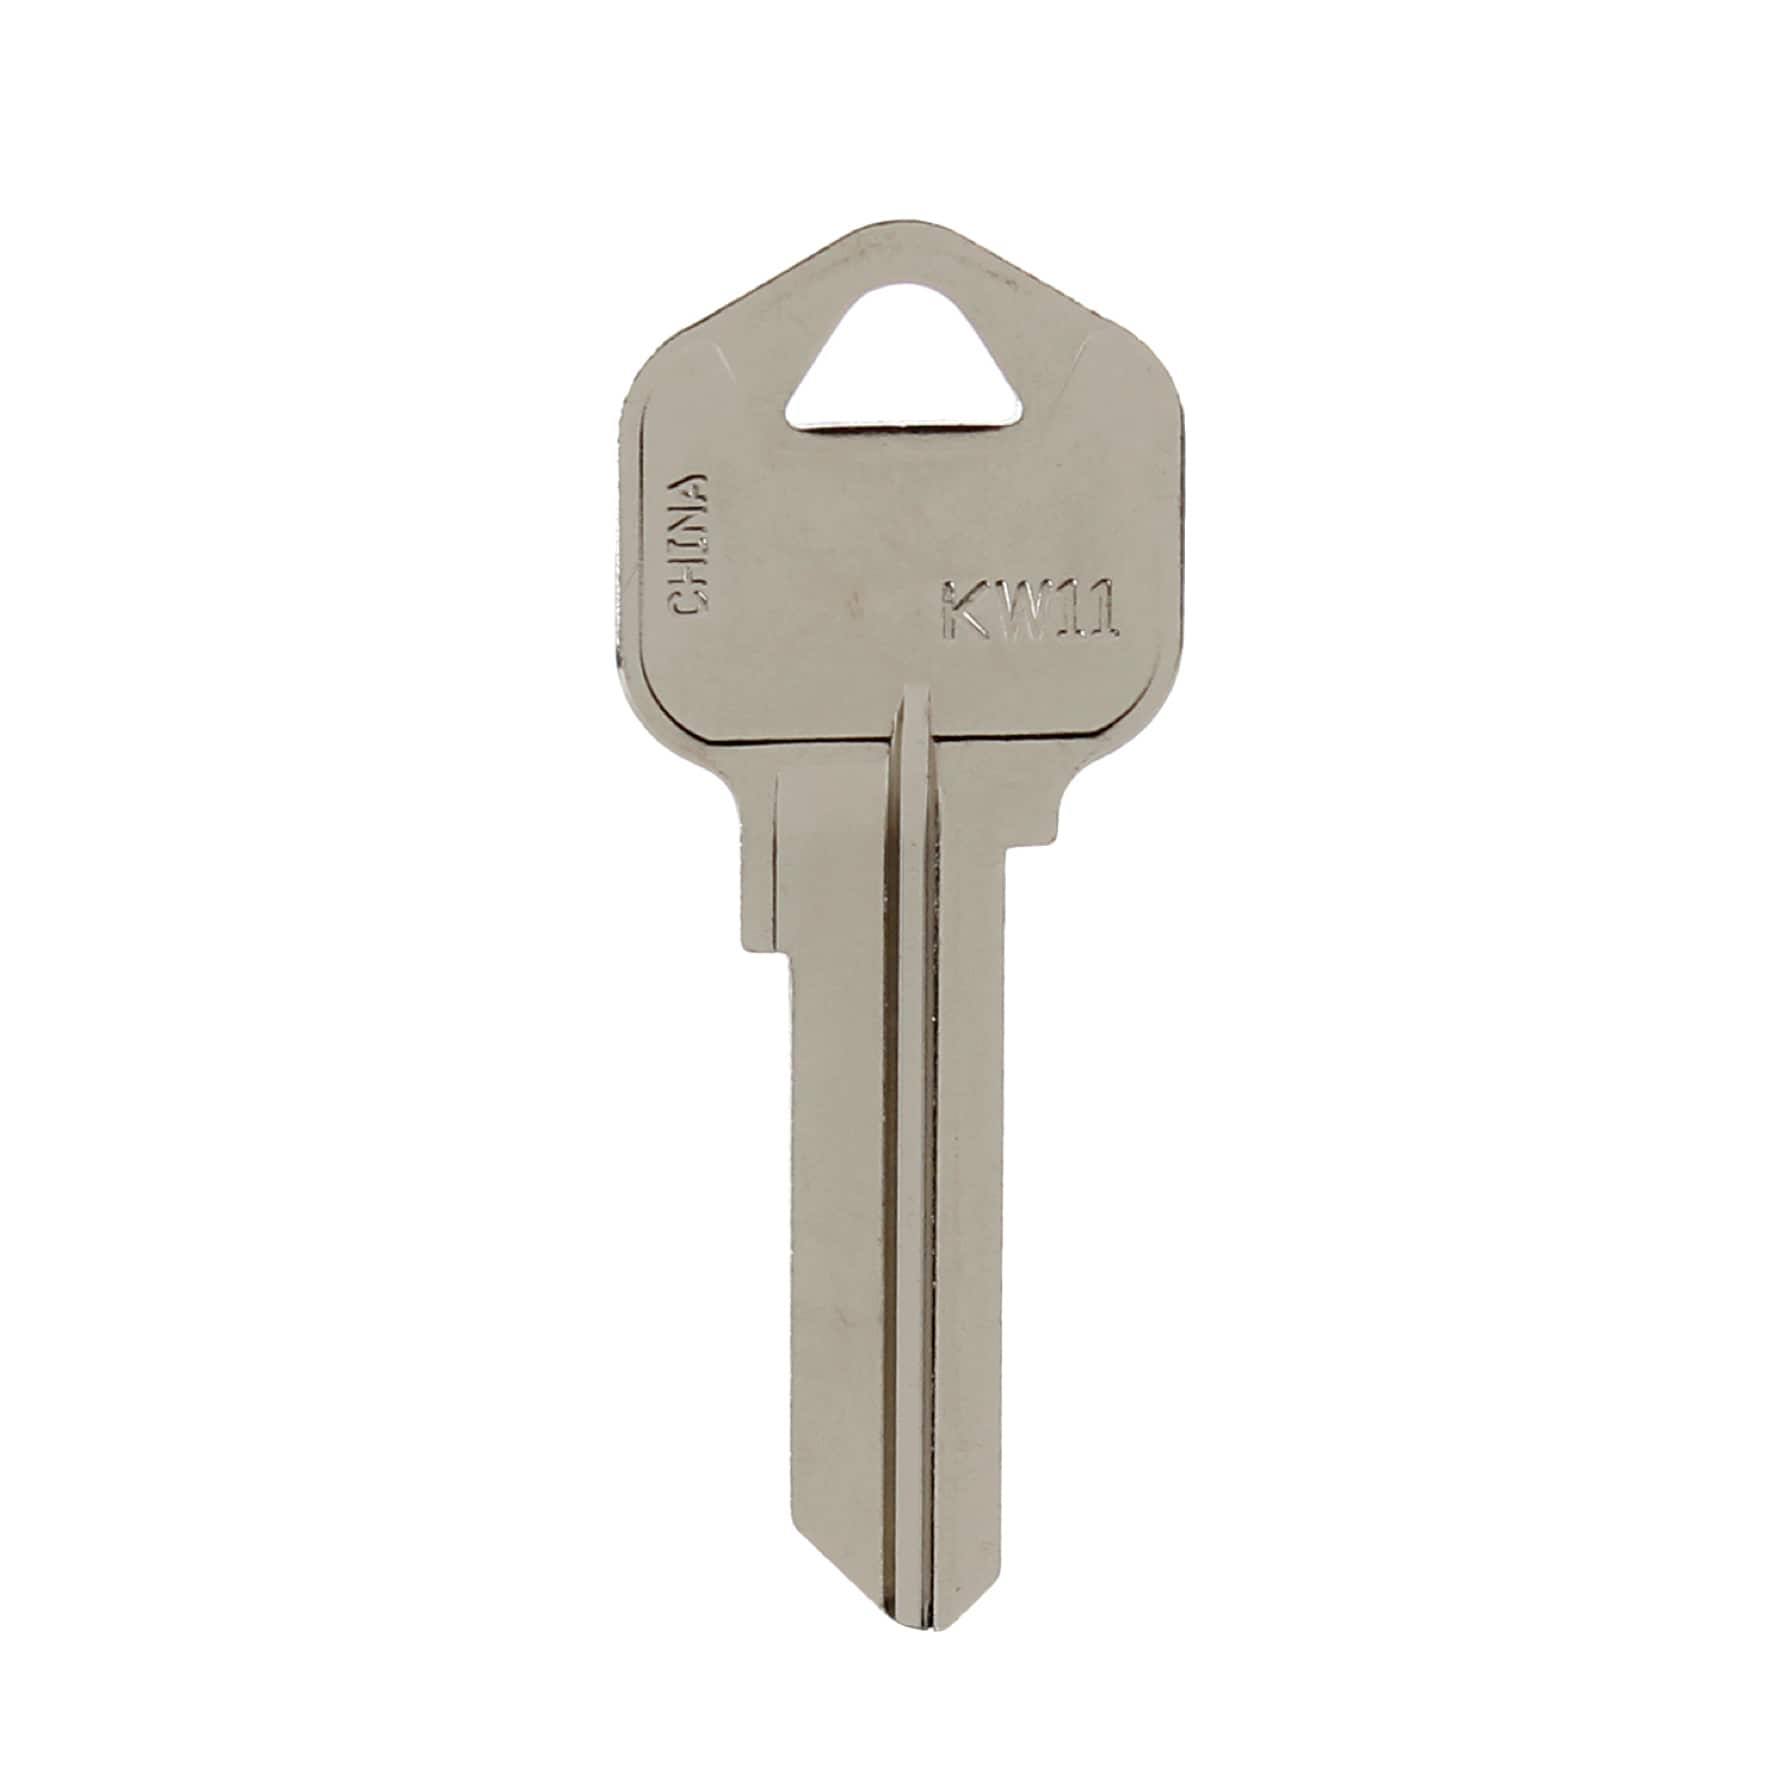 Hy-Ko Products Kwikset Lock Key - Blank